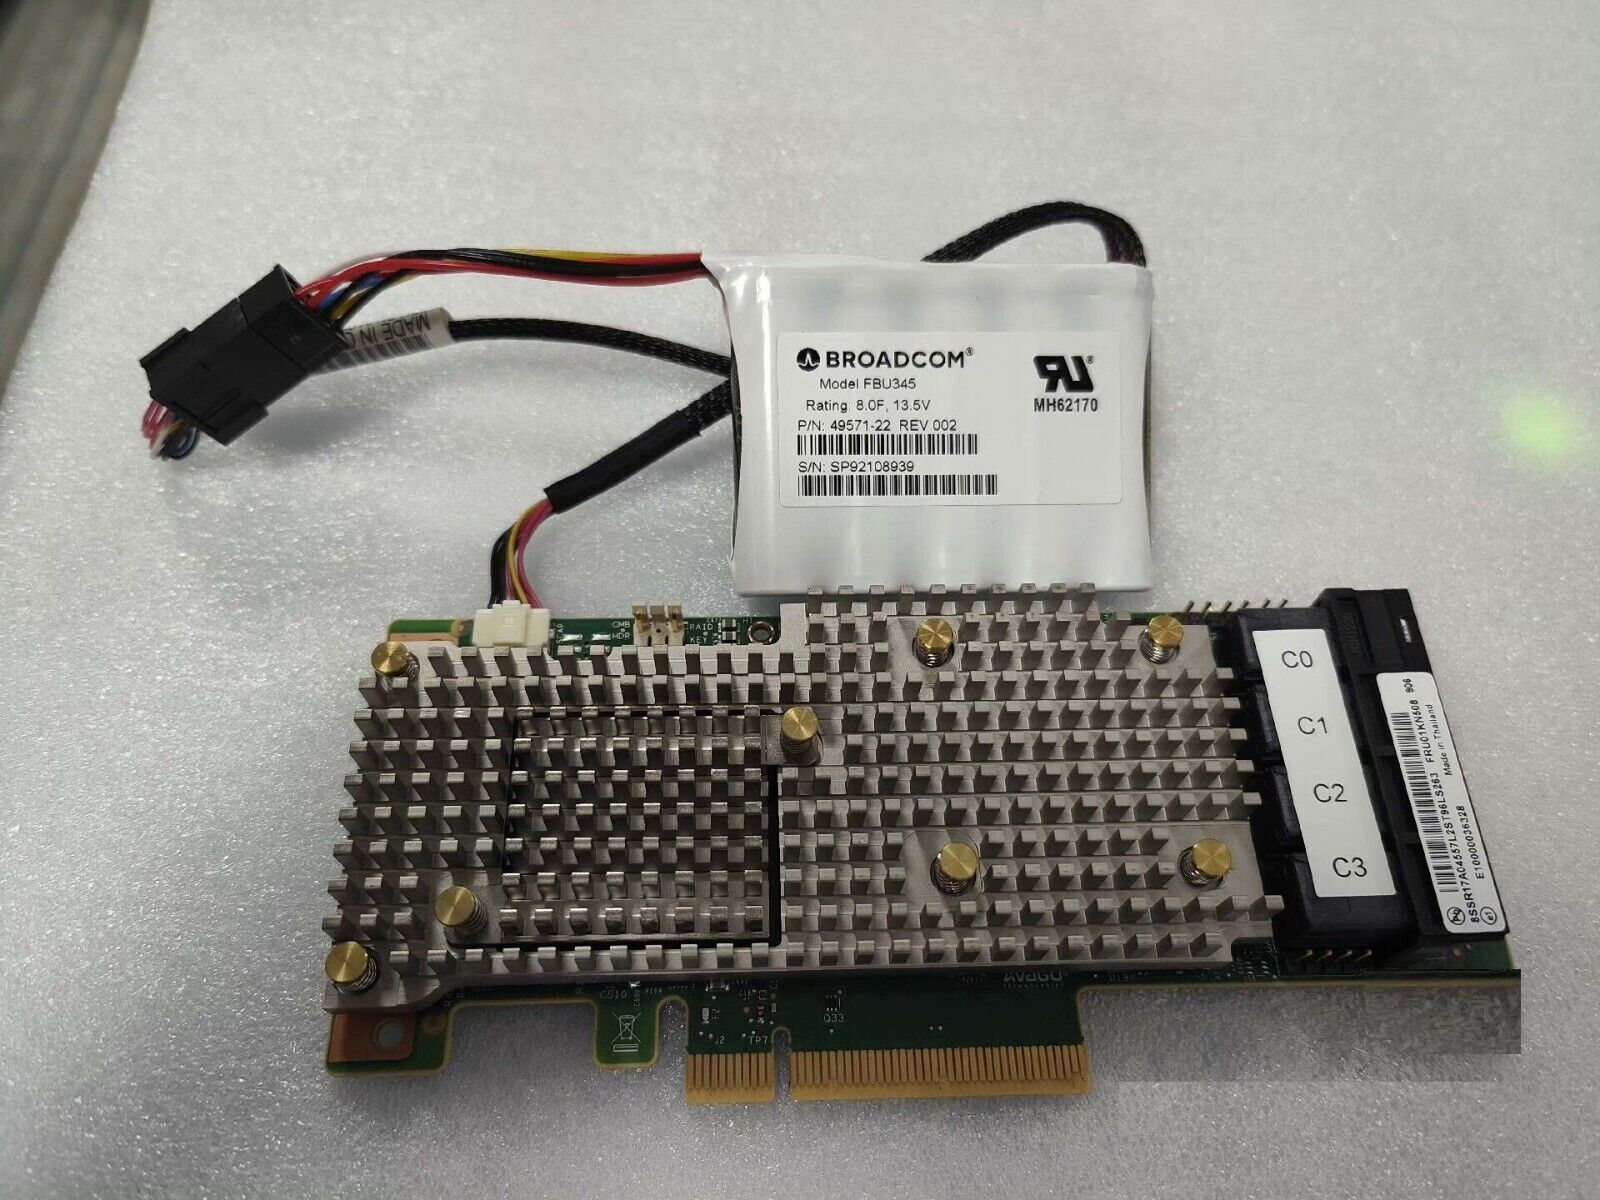 LENOVO R930-16I FRU 01KN508 SAS 9460-16i 12Gb/s PCIe RAID Controller with CVM05